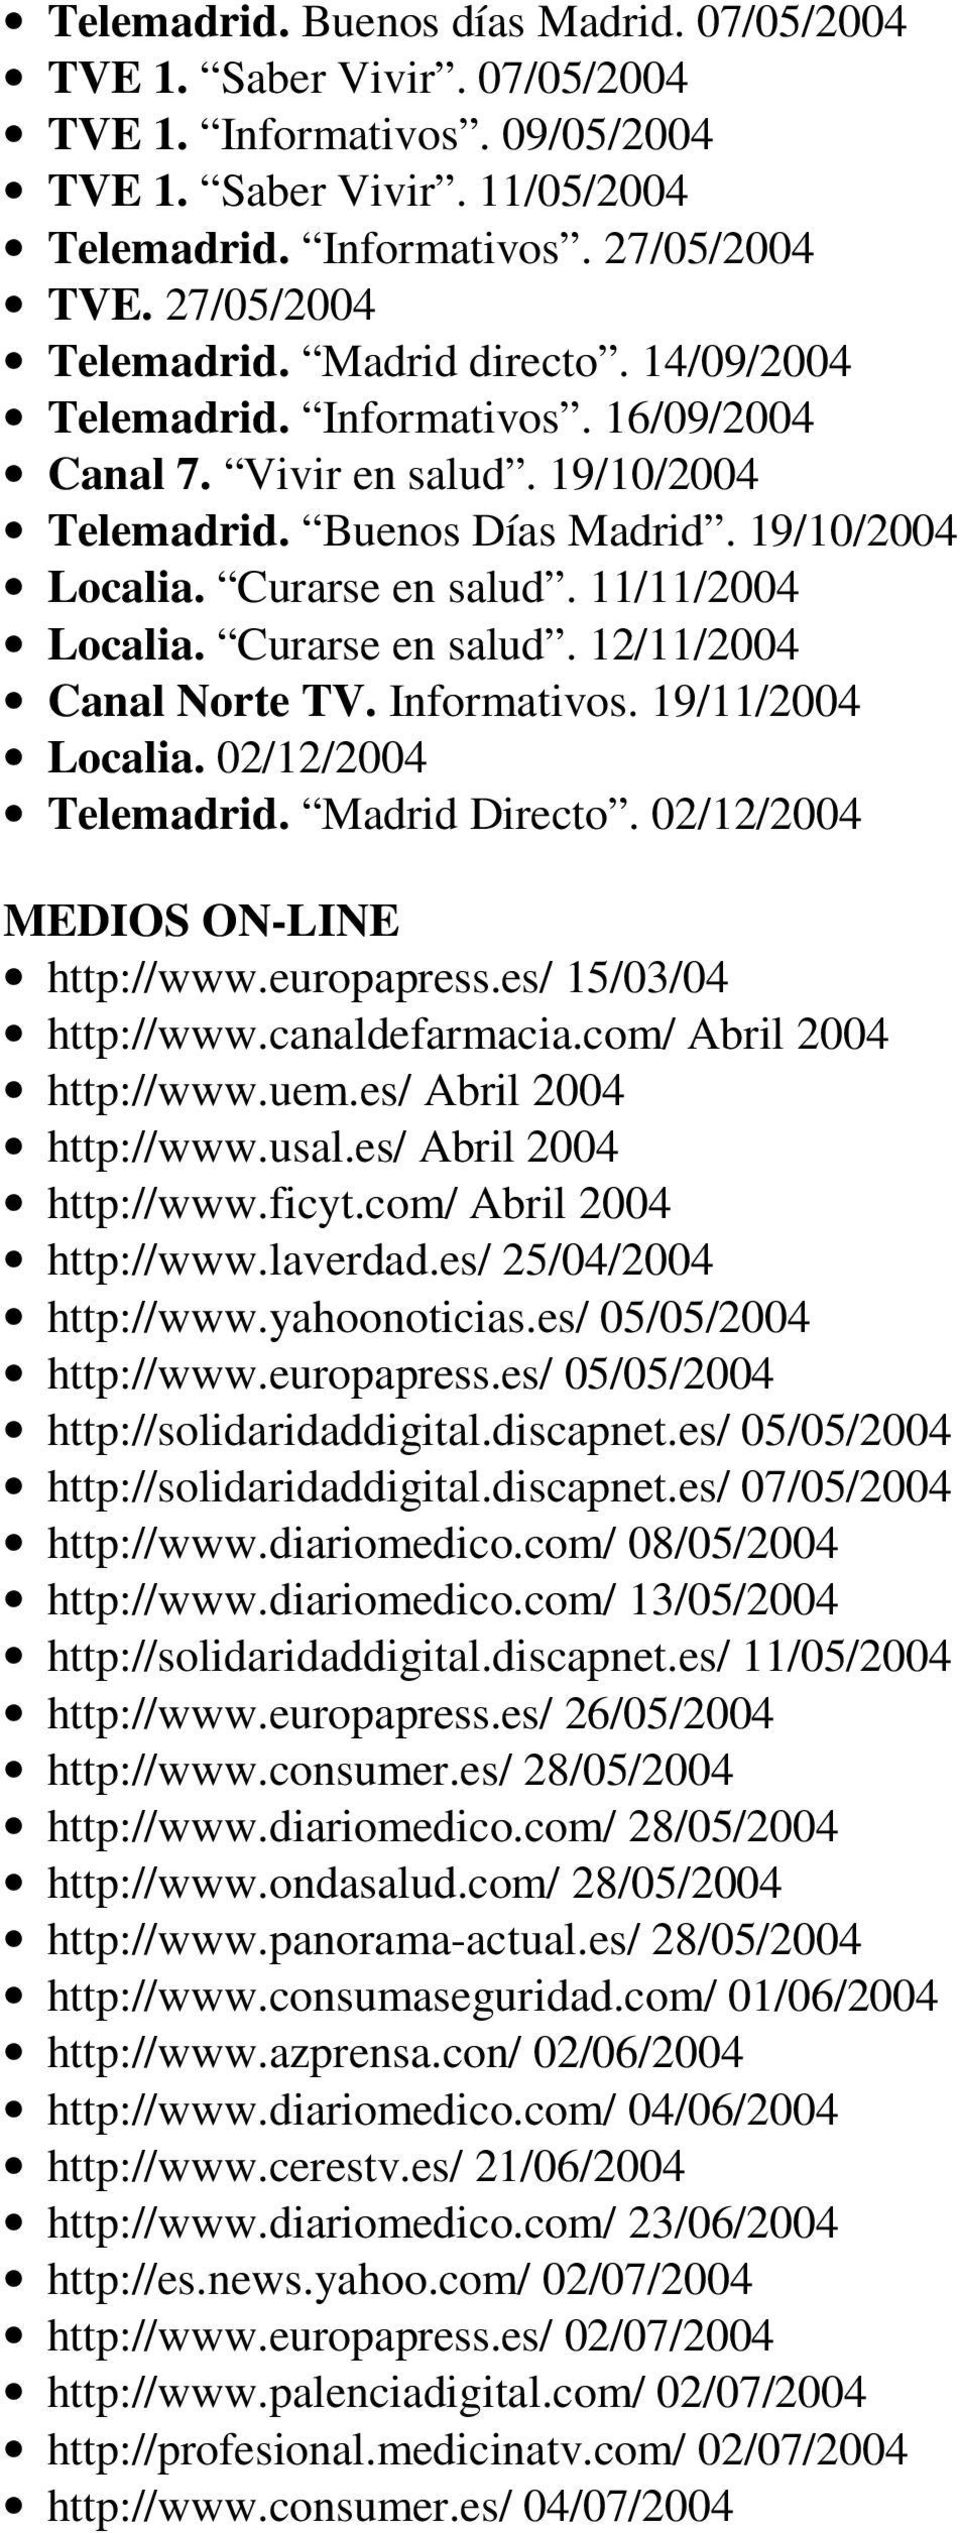 11/11/2004 Localia. Curarse en salud. 12/11/2004 Canal Norte TV. Informativos. 19/11/2004 Localia. 02/12/2004 Telemadrid. Madrid Directo. 02/12/2004 MEDIOS ON-LINE http://www.europapress.